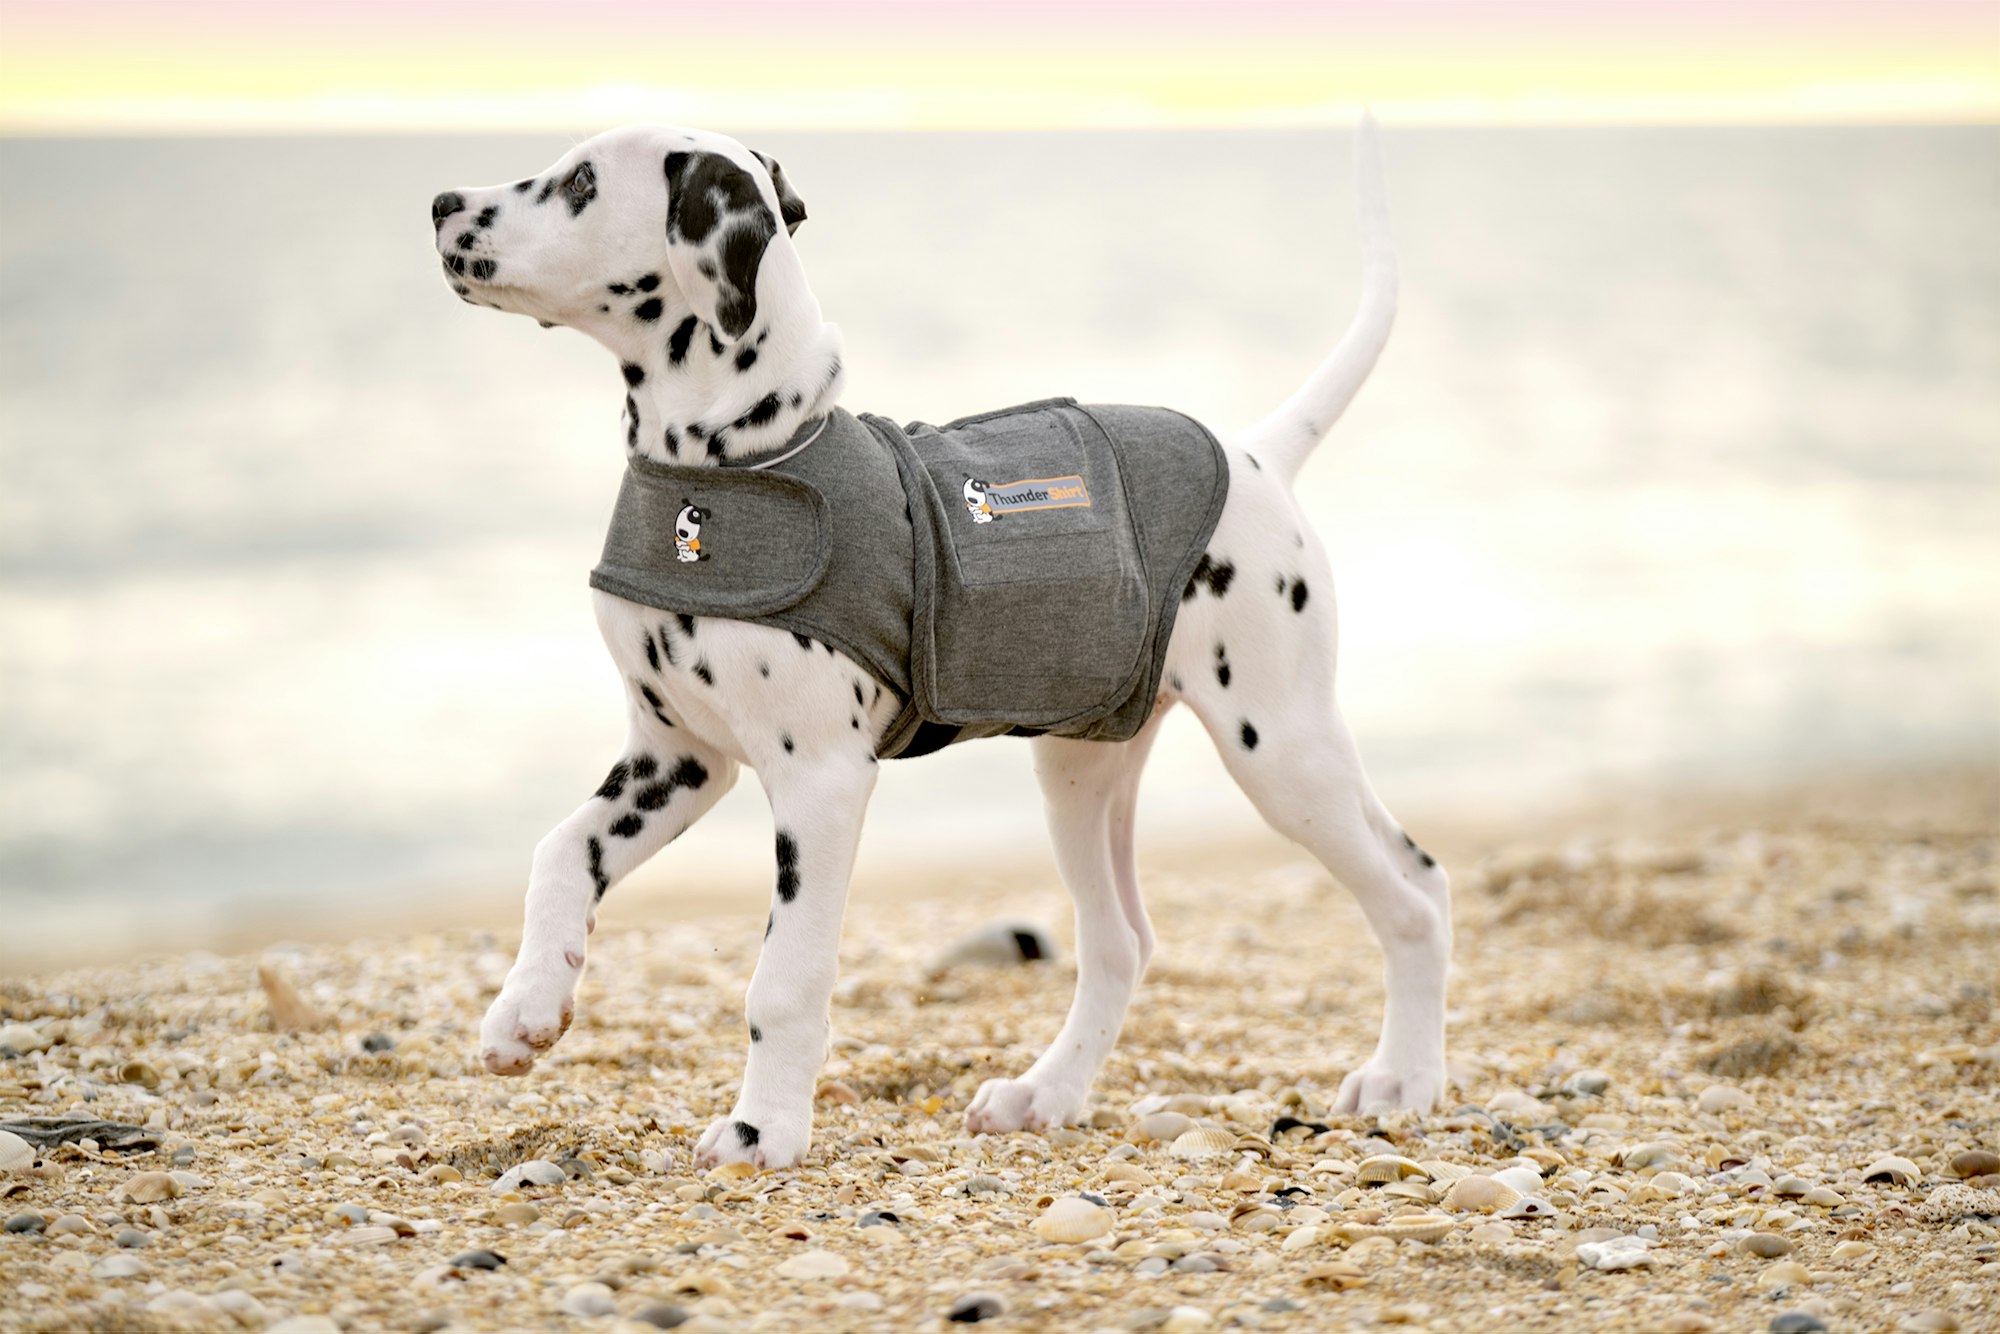 A dalmatian on a beach wearing a ThunderShirt